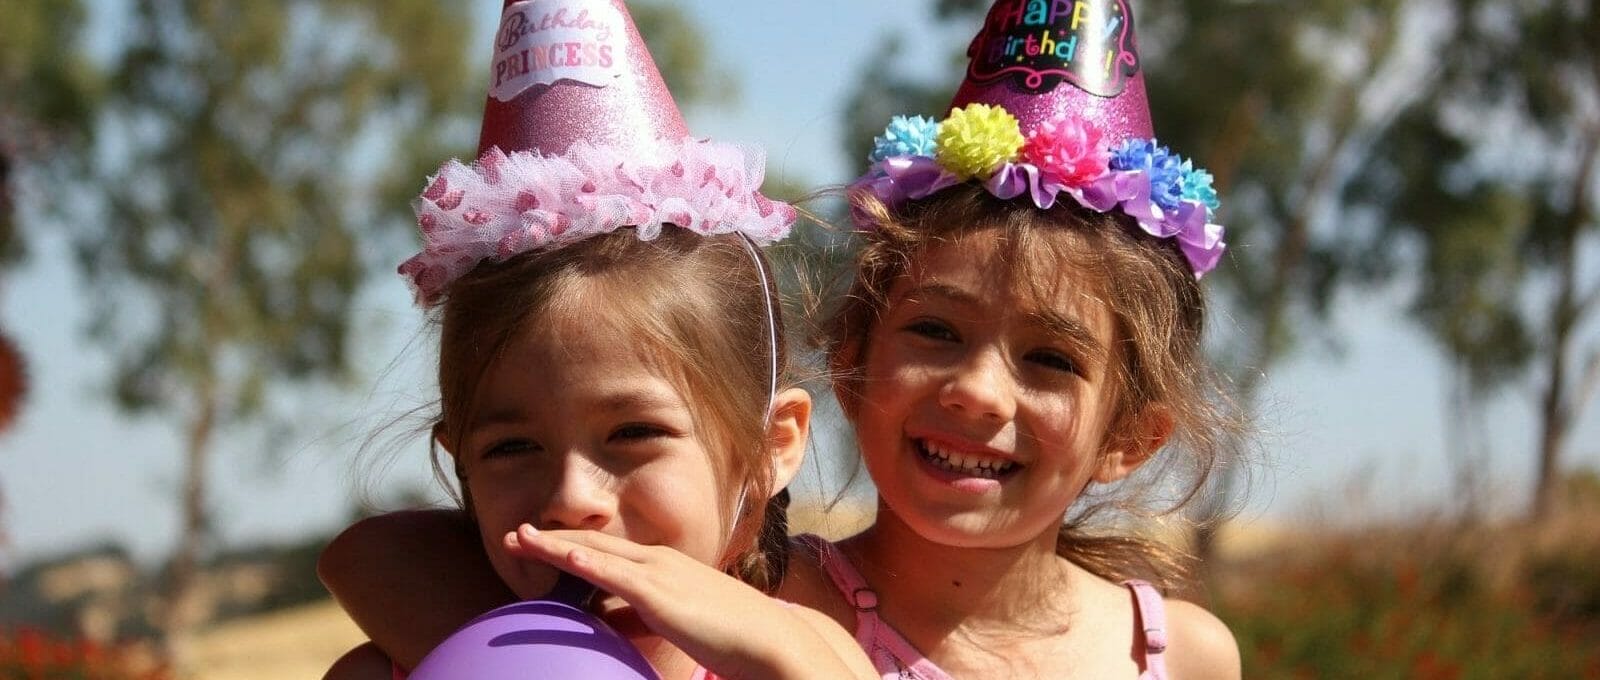 Duas meninas comemorando o aniversário. Ambas estão com chapéus de festa coloridos e uma assopra um balão roxo